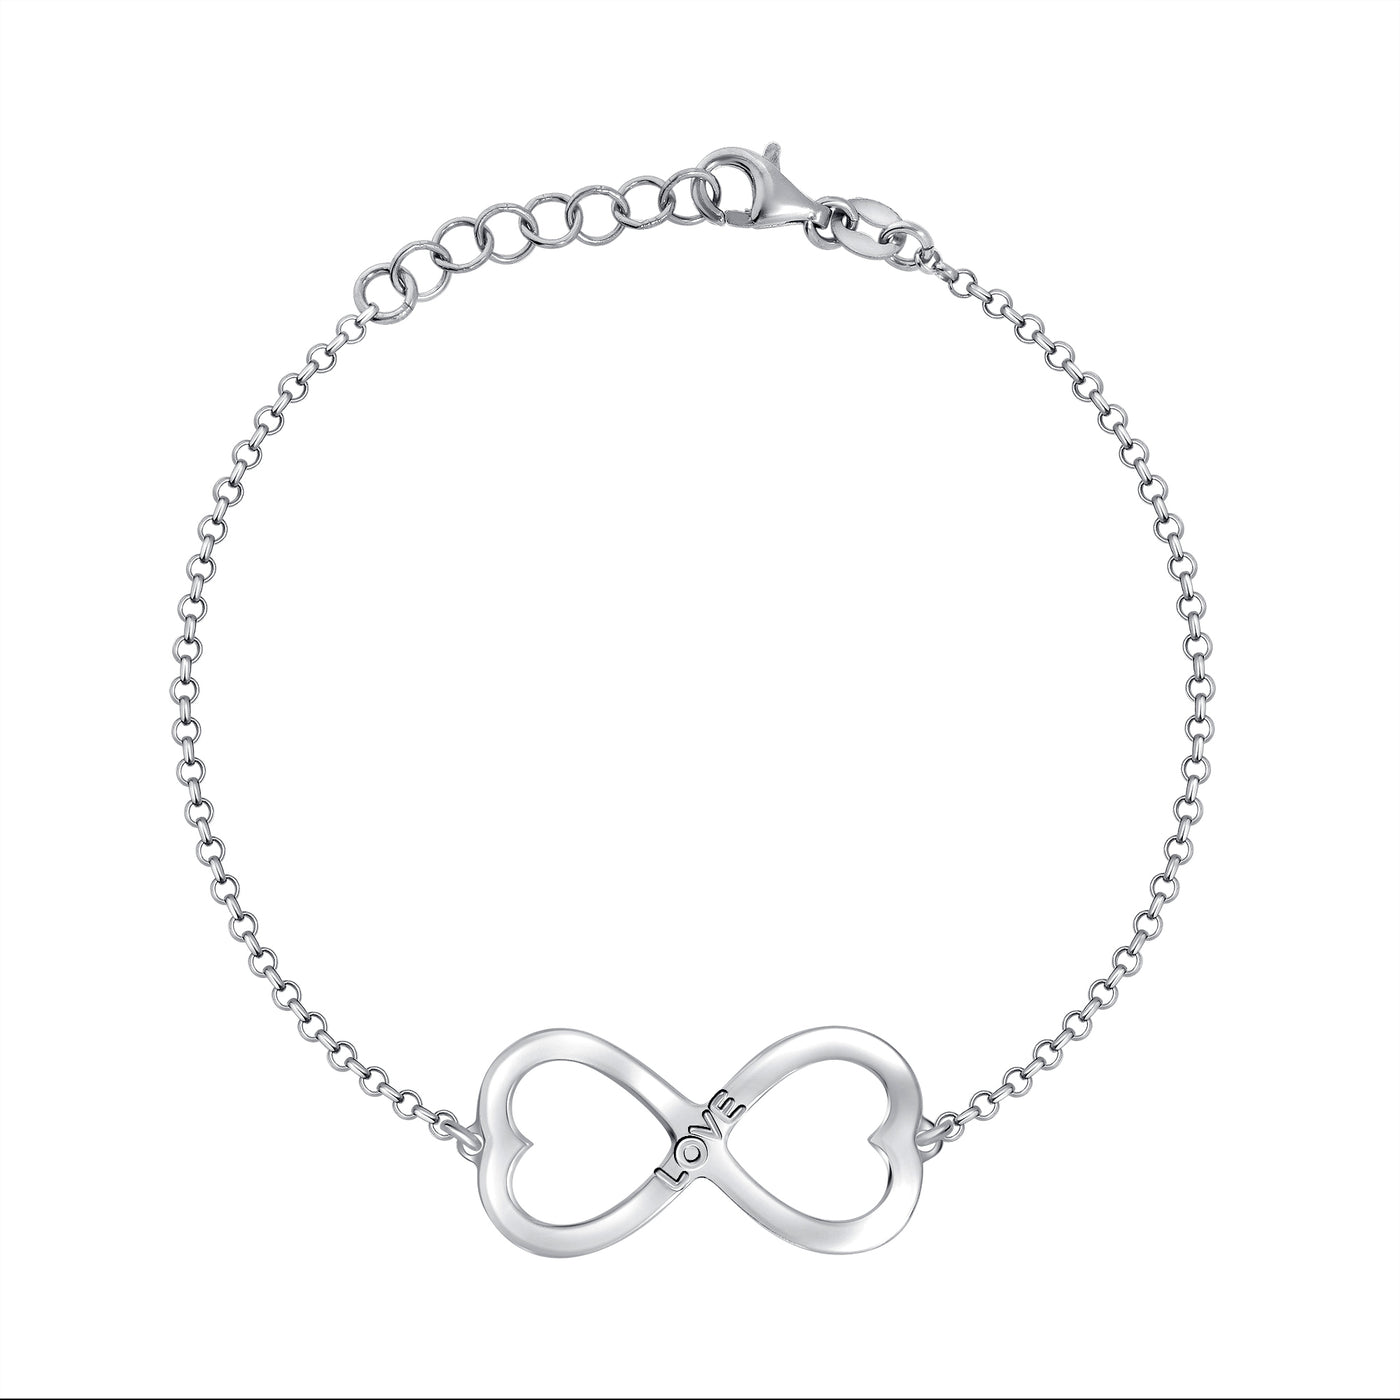 Italian Sterling Silver Infinity Love Double Hearts Bracelet